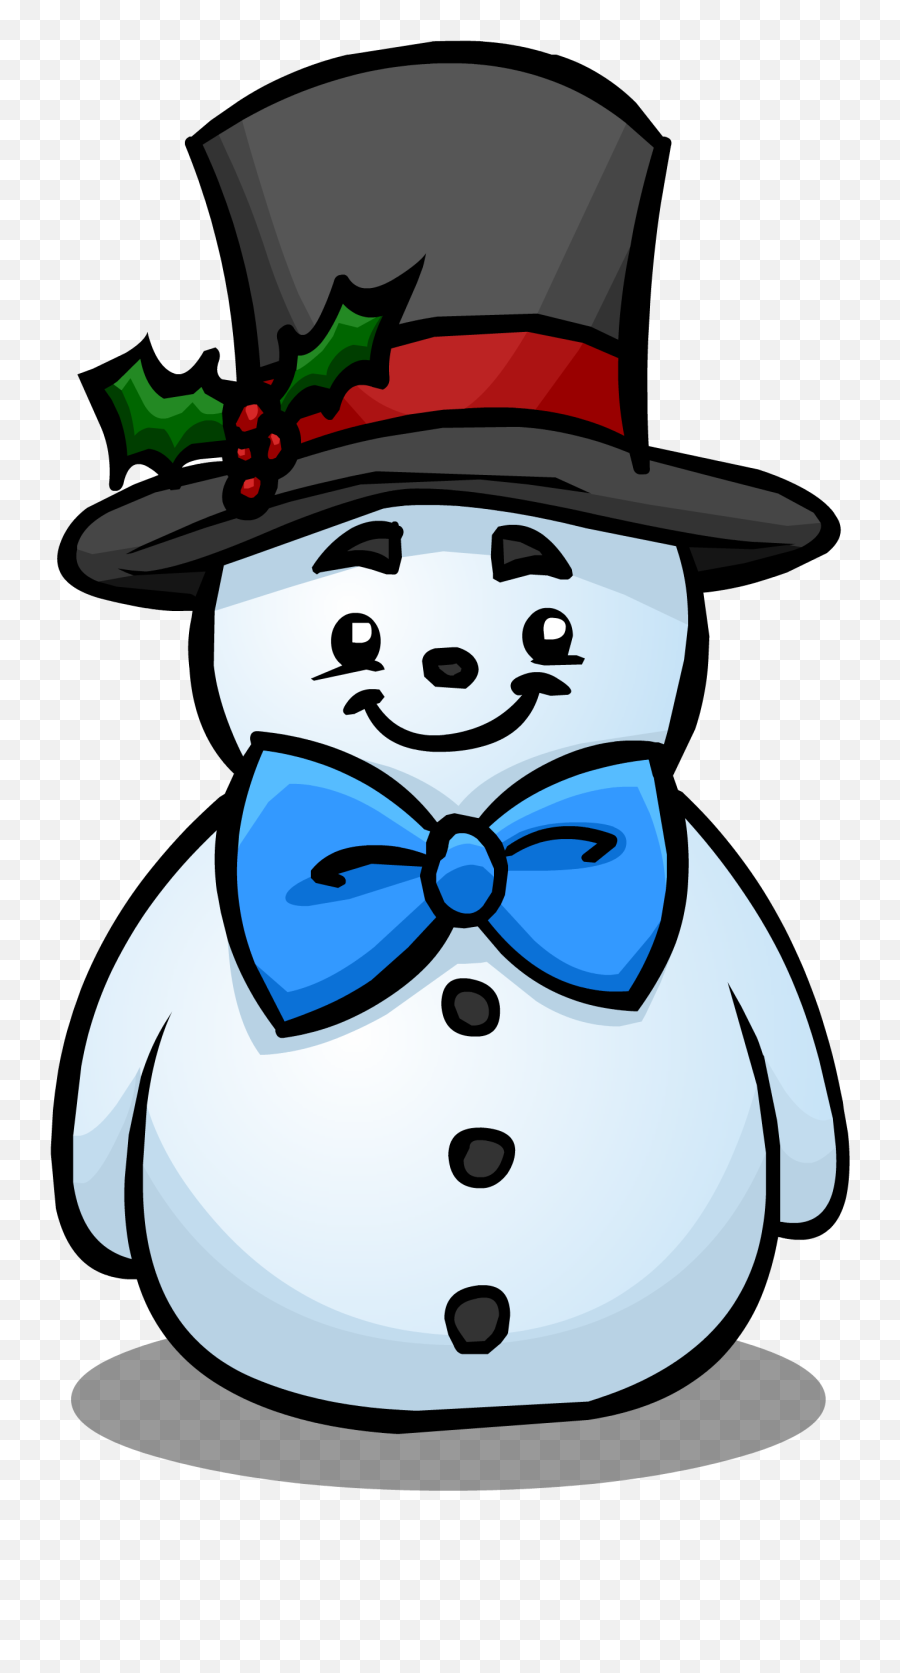 Clipart Snowman Hat Clipart Snowman - Snowman With A Top Hat Emoji,Snowman Emoji Pillow